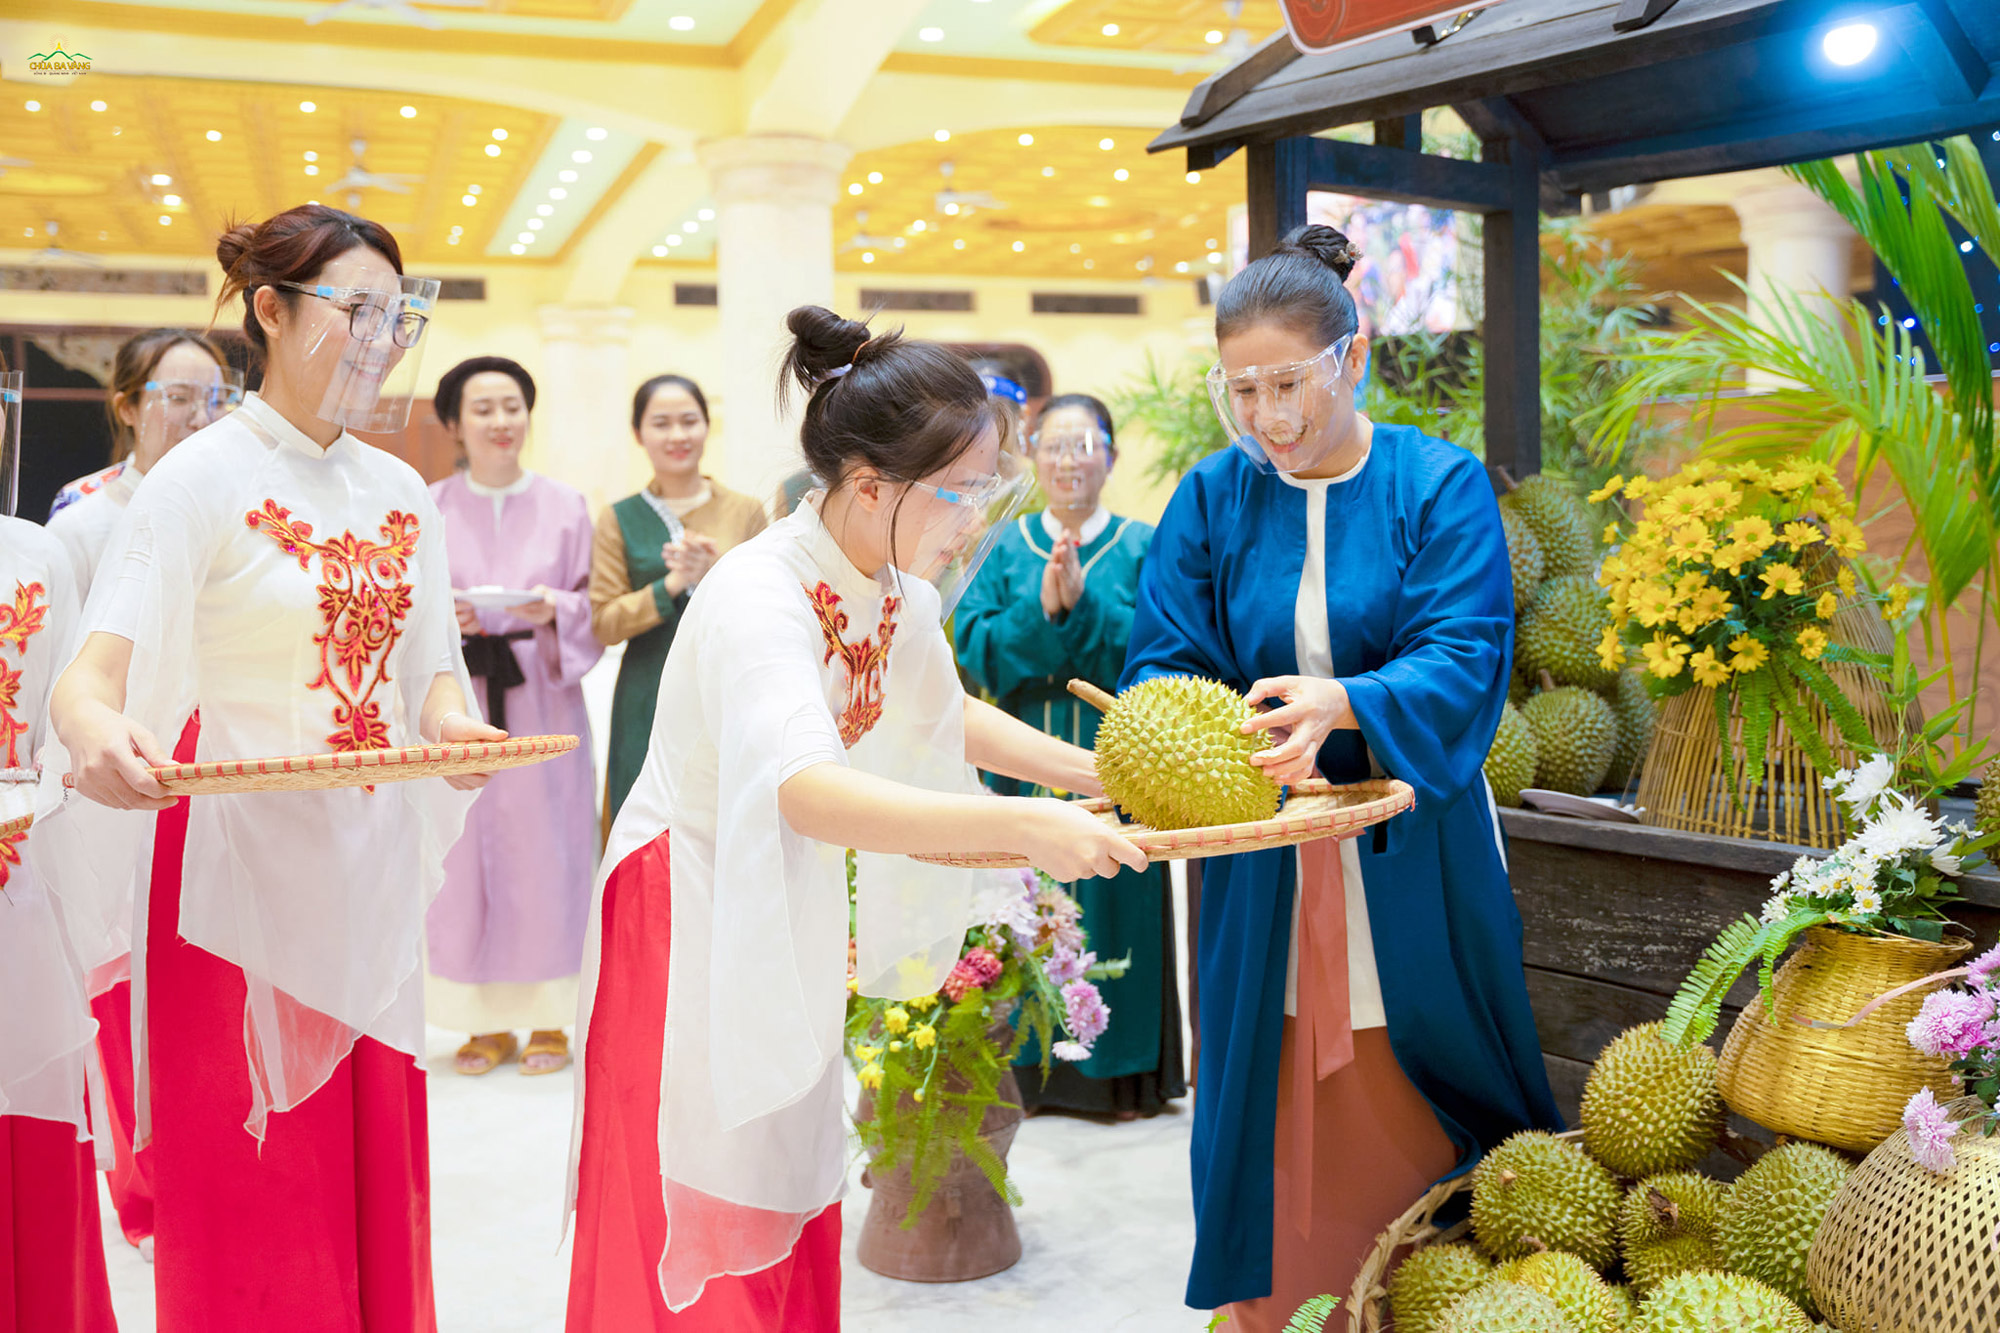   Trong không khí vui tươi của chương trình, Phật tử Phạm Thị Yến - Chủ nhiệm CLB Cúc Vàng lần lượt trao trái sầu riêng - món quà của các đạo hữu miền Nam tới các Phật tử tại chùa để liên hoan  